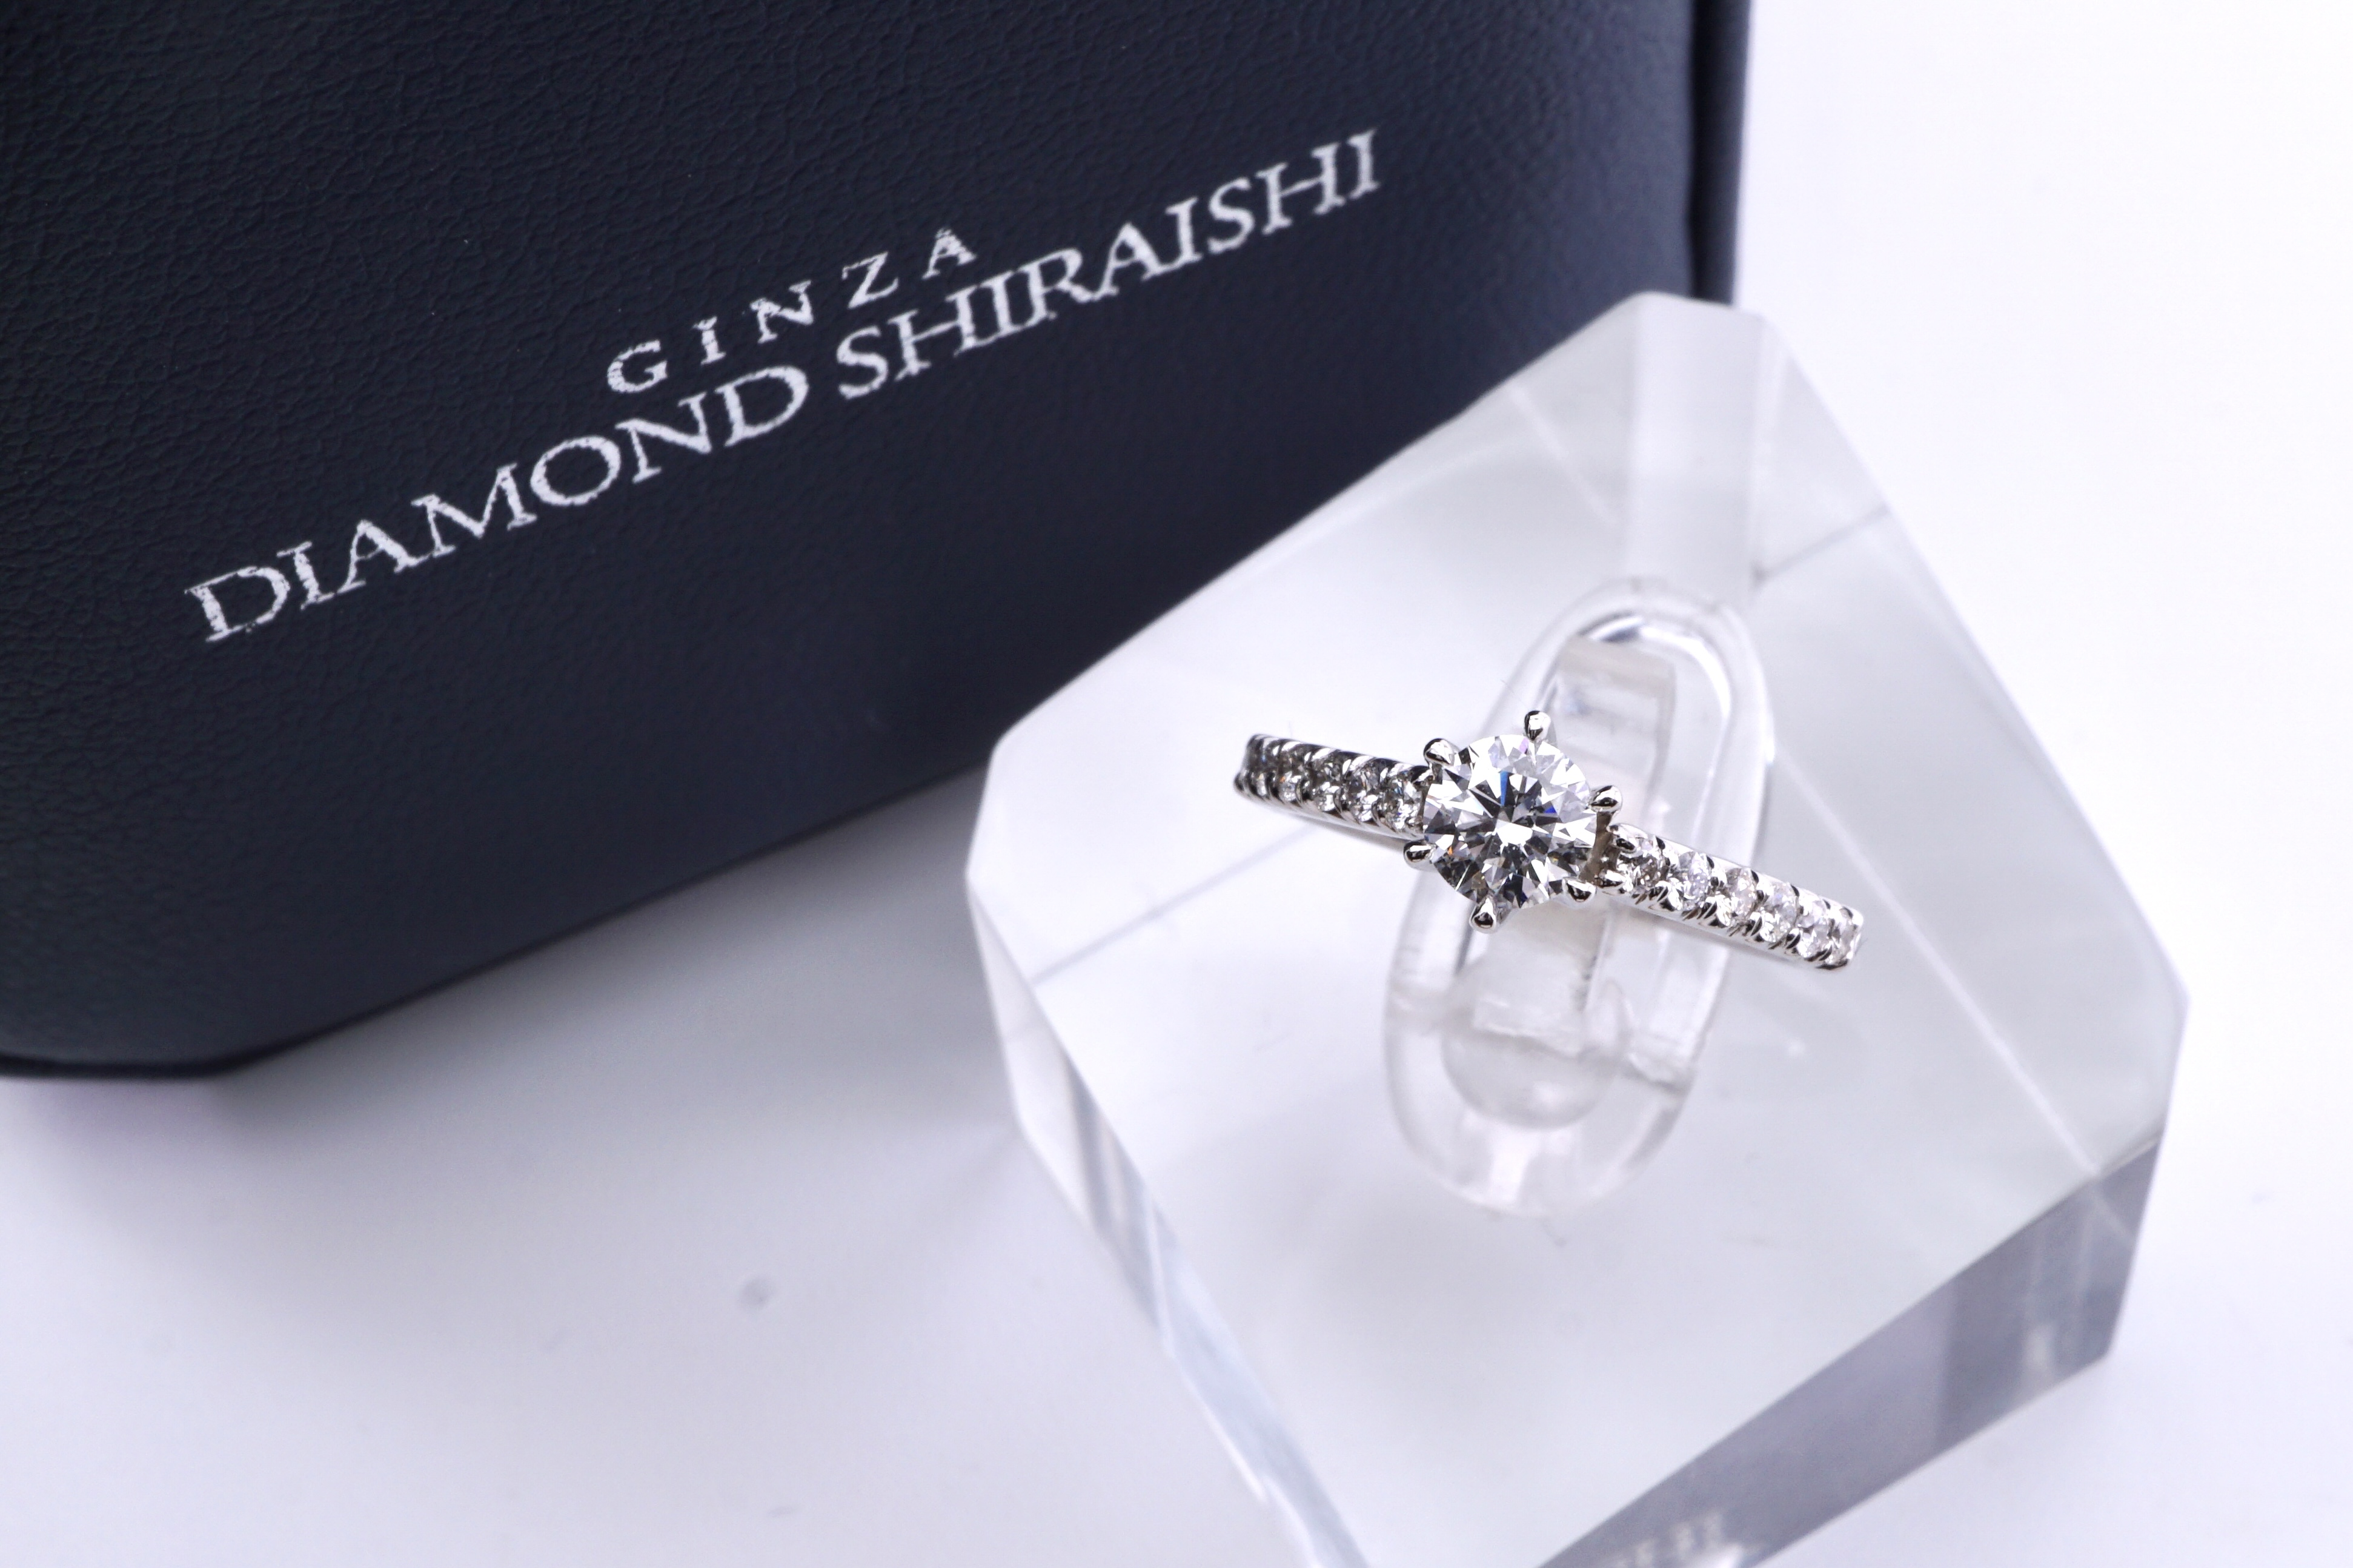 DIAMOND SHIRAISHIダイヤモンド ペア リング  pt950